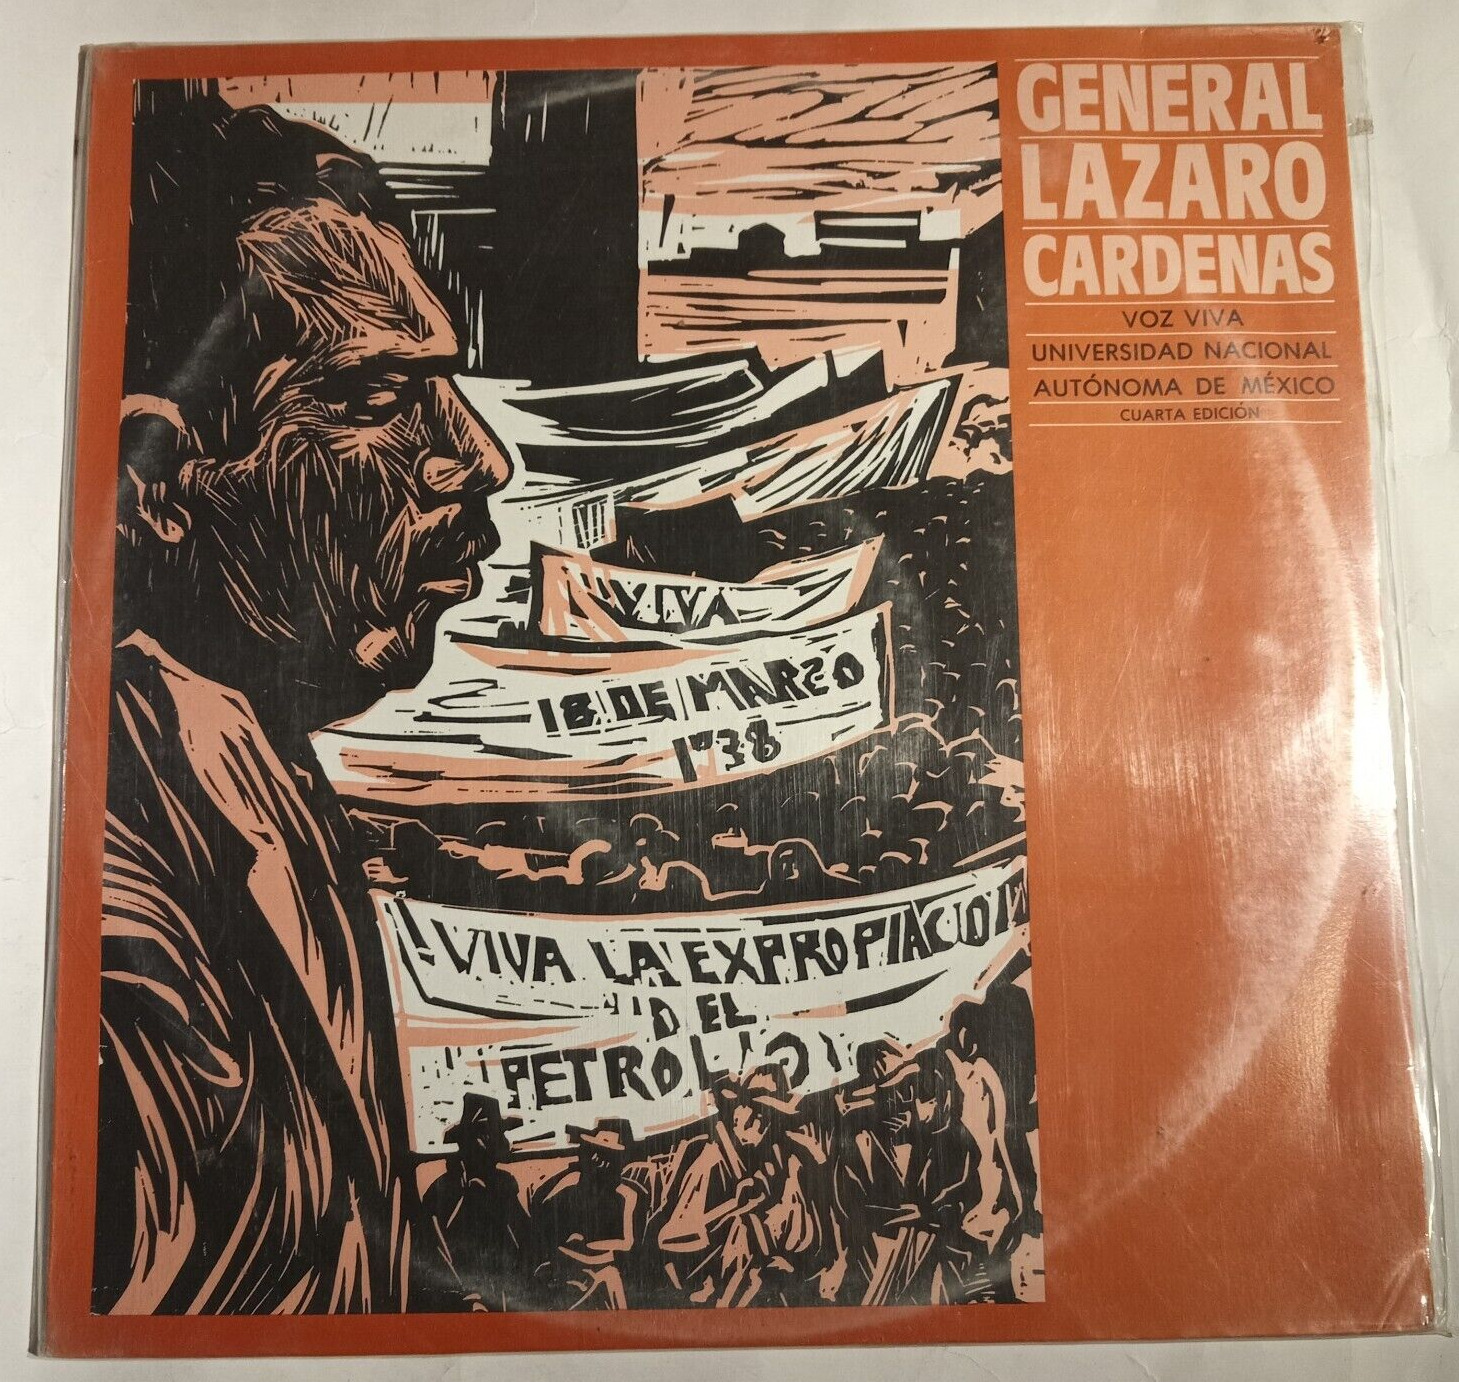 UNAM VOZ VIVA, GENERAL LAZARO CARDENAS -MENSAJE A LA NACION- 1988 MEXICAN LP SS